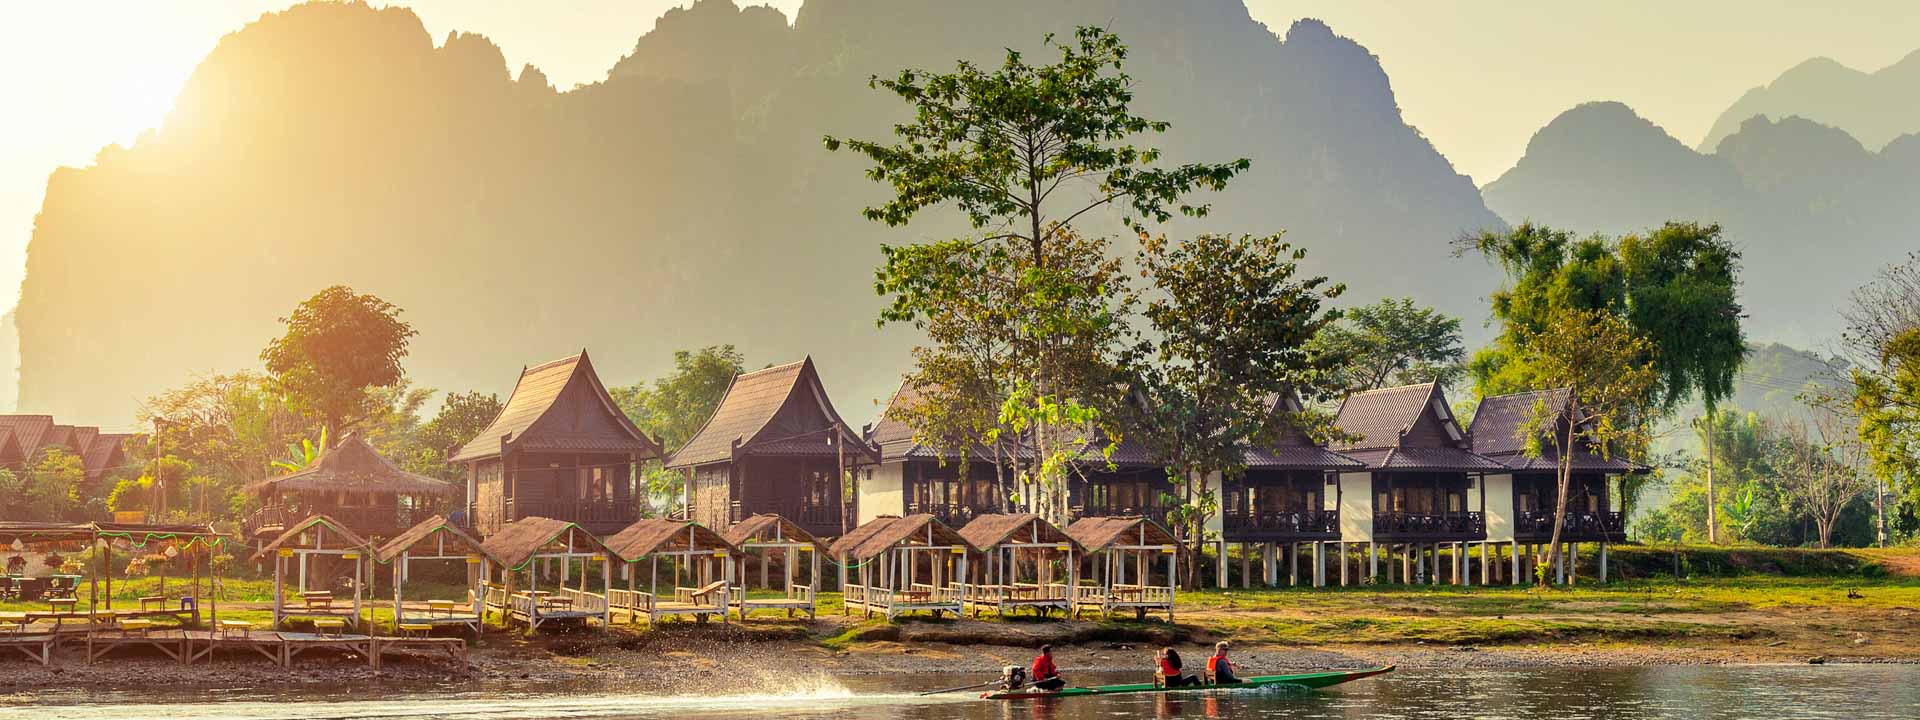 Lo mejor de Laos 5 días